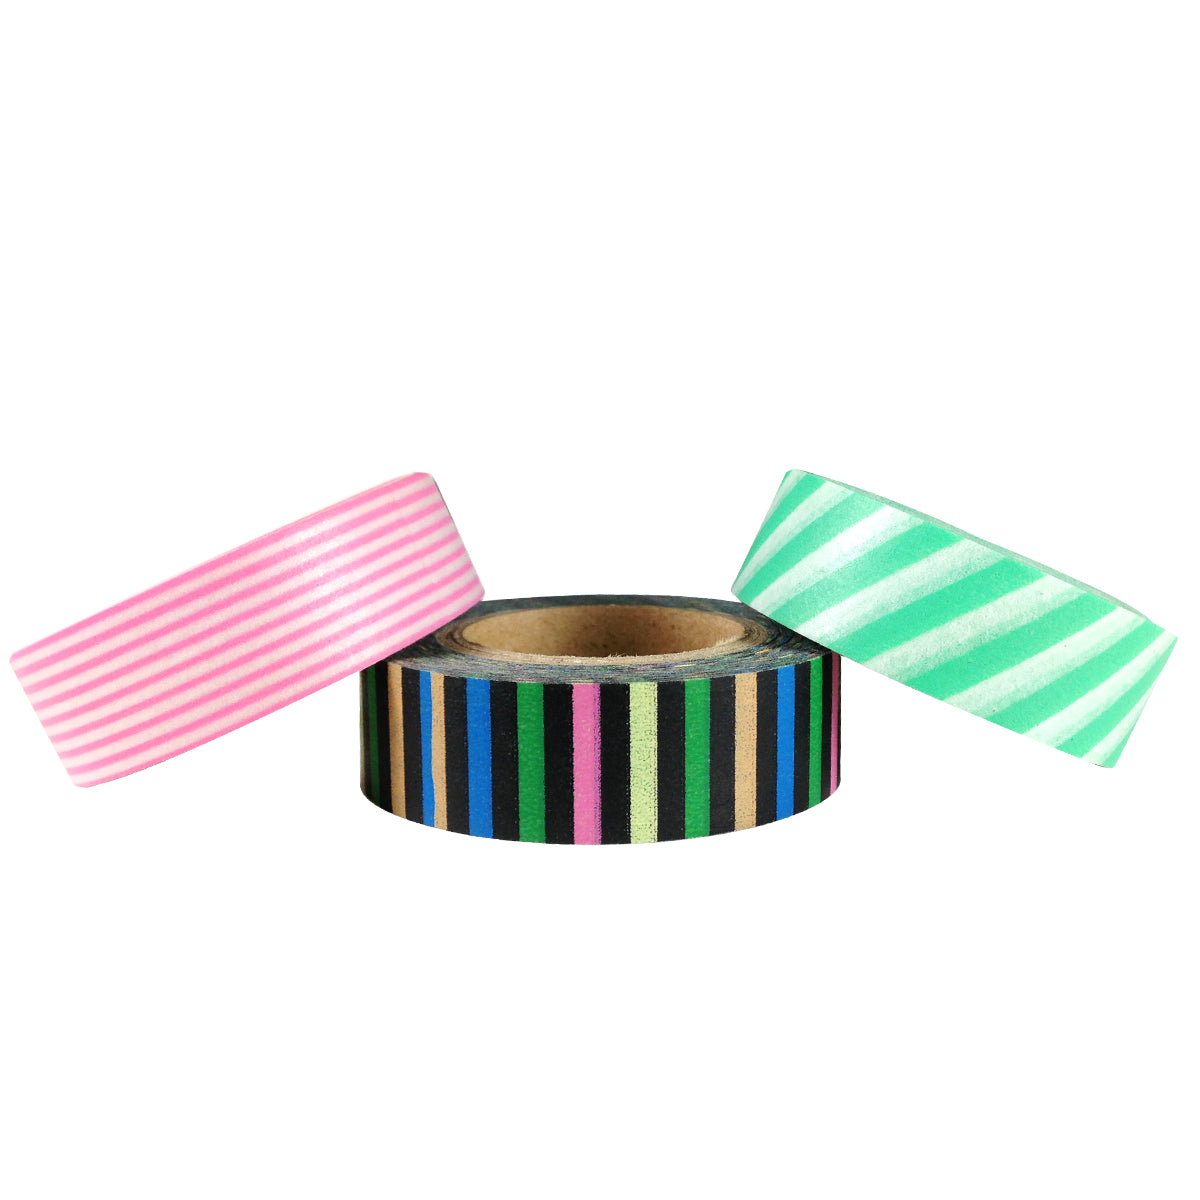 Straight Line Stripes Japanese Washi Masking Tape (Set of 3)